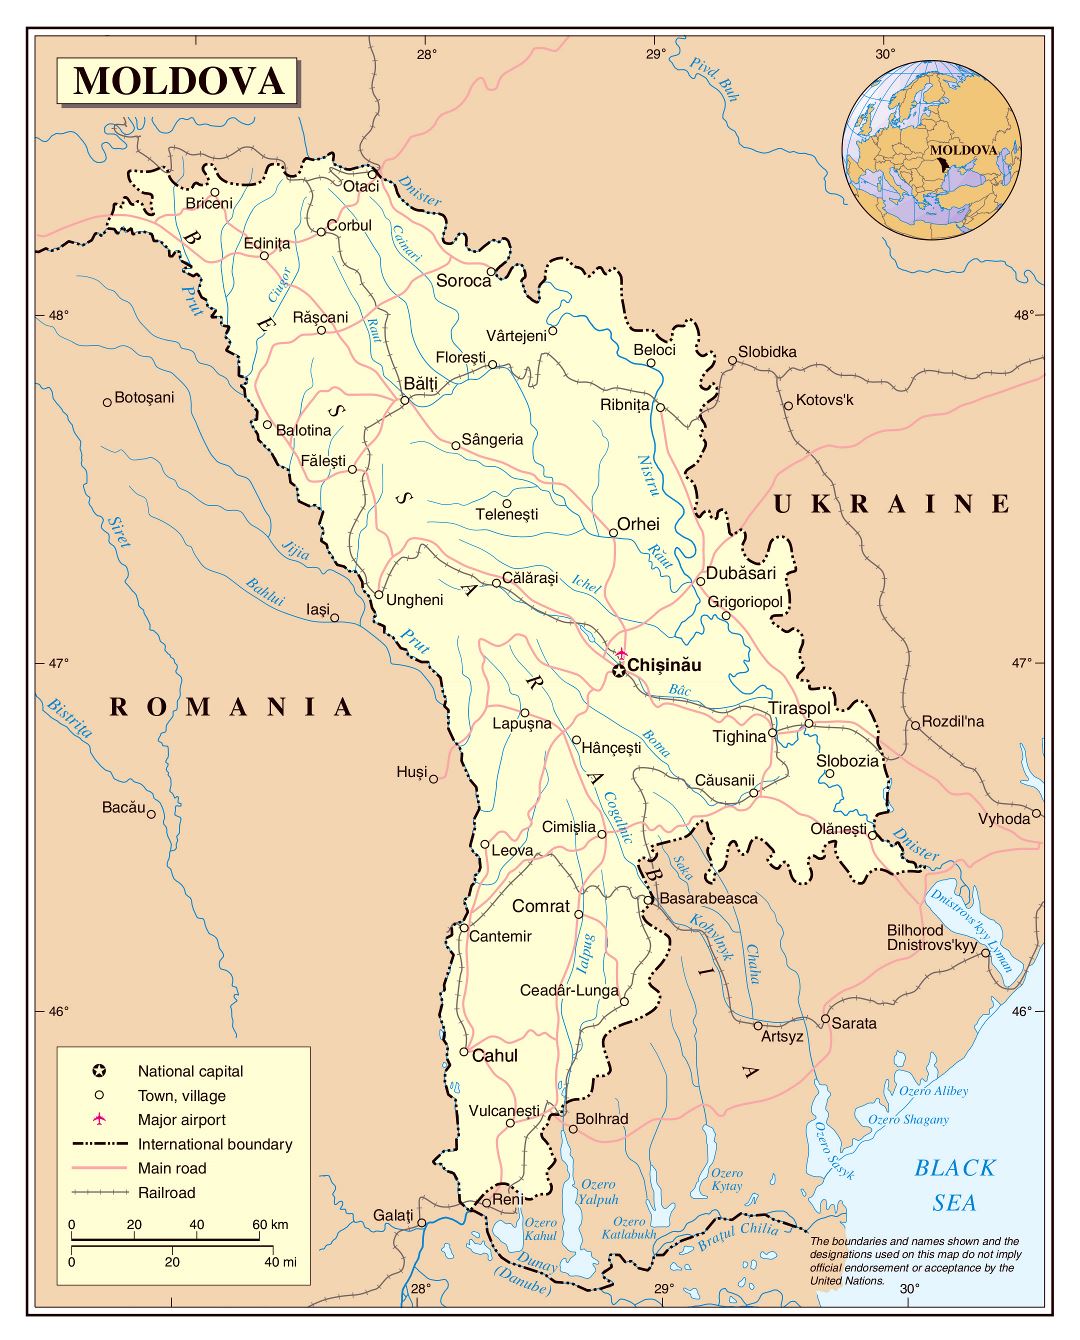 Grande detallado mapa política de Moldavia con carreteras, ferrocarriles, aeropuertos y principales ciudades